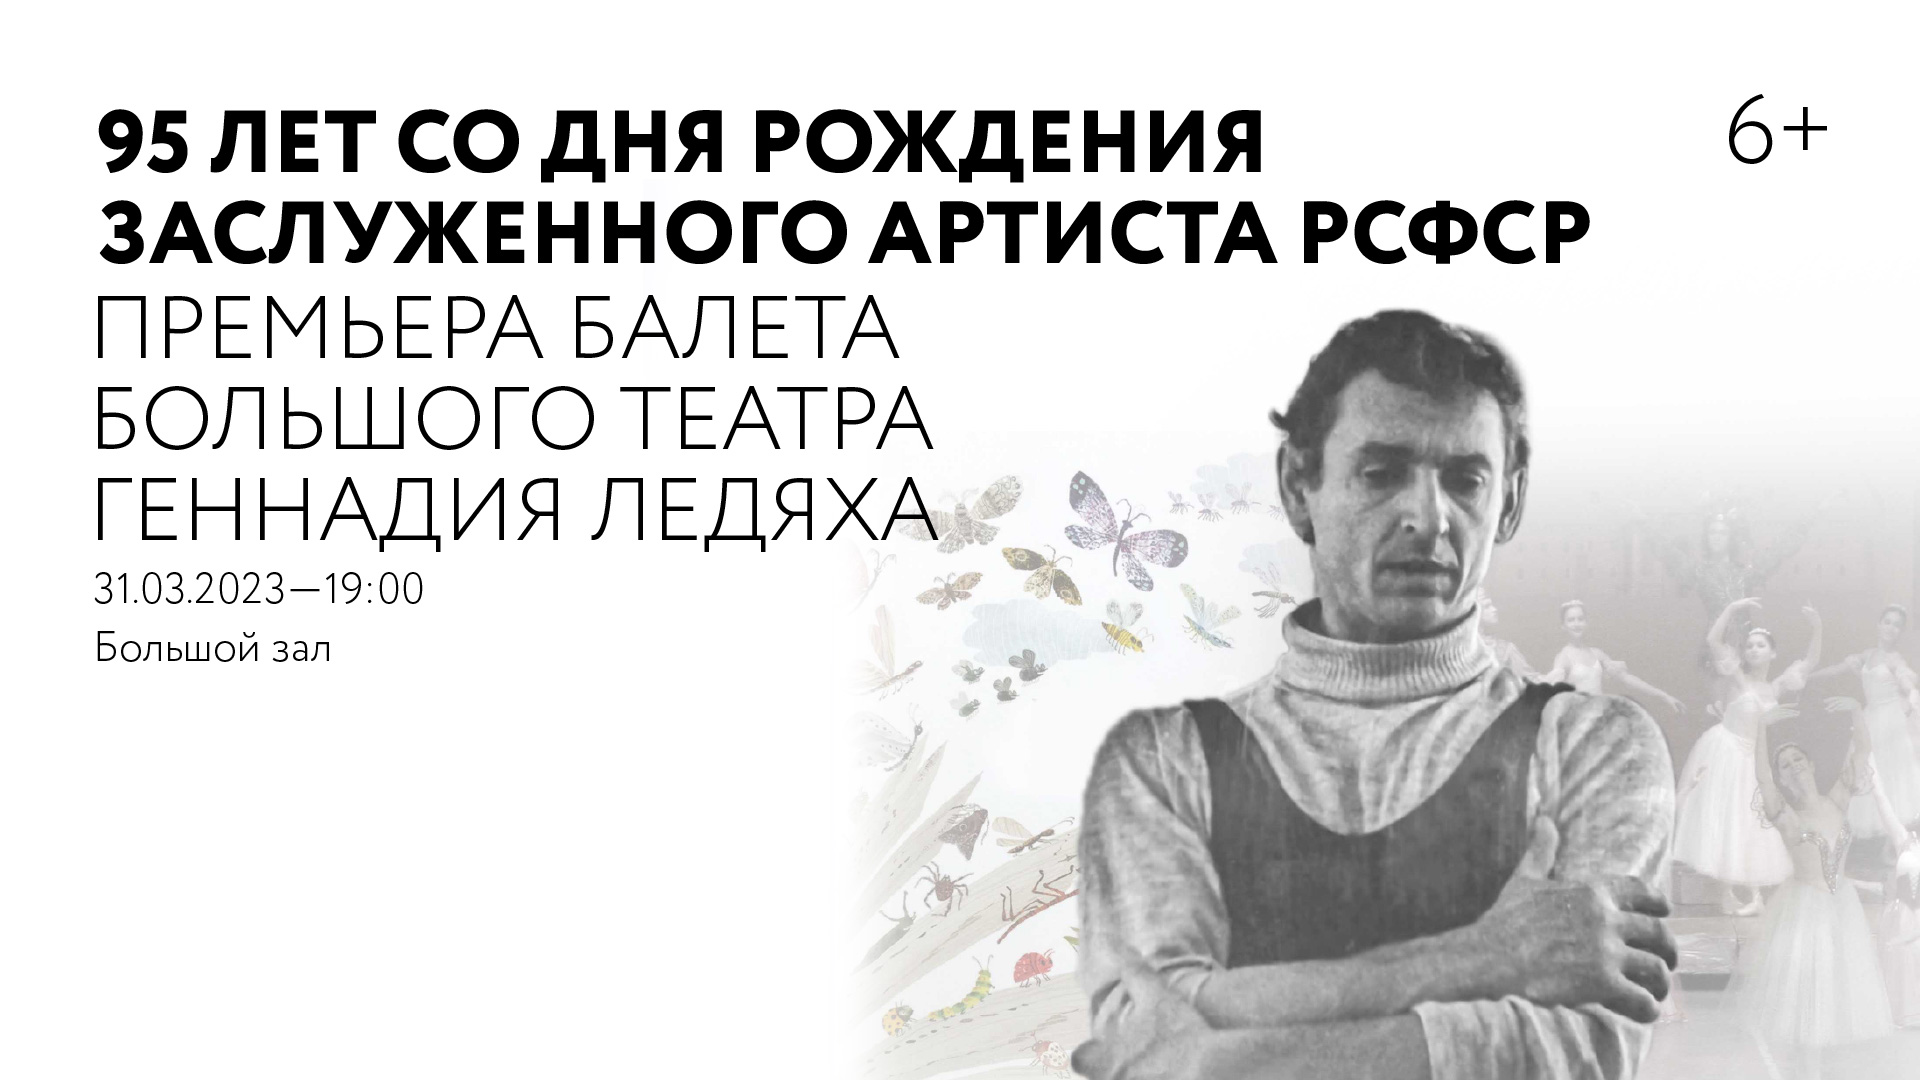 95 лет со дня рождения заслуженного артиста РСФСР, премьера Большого театра России Геннадия Ледяха